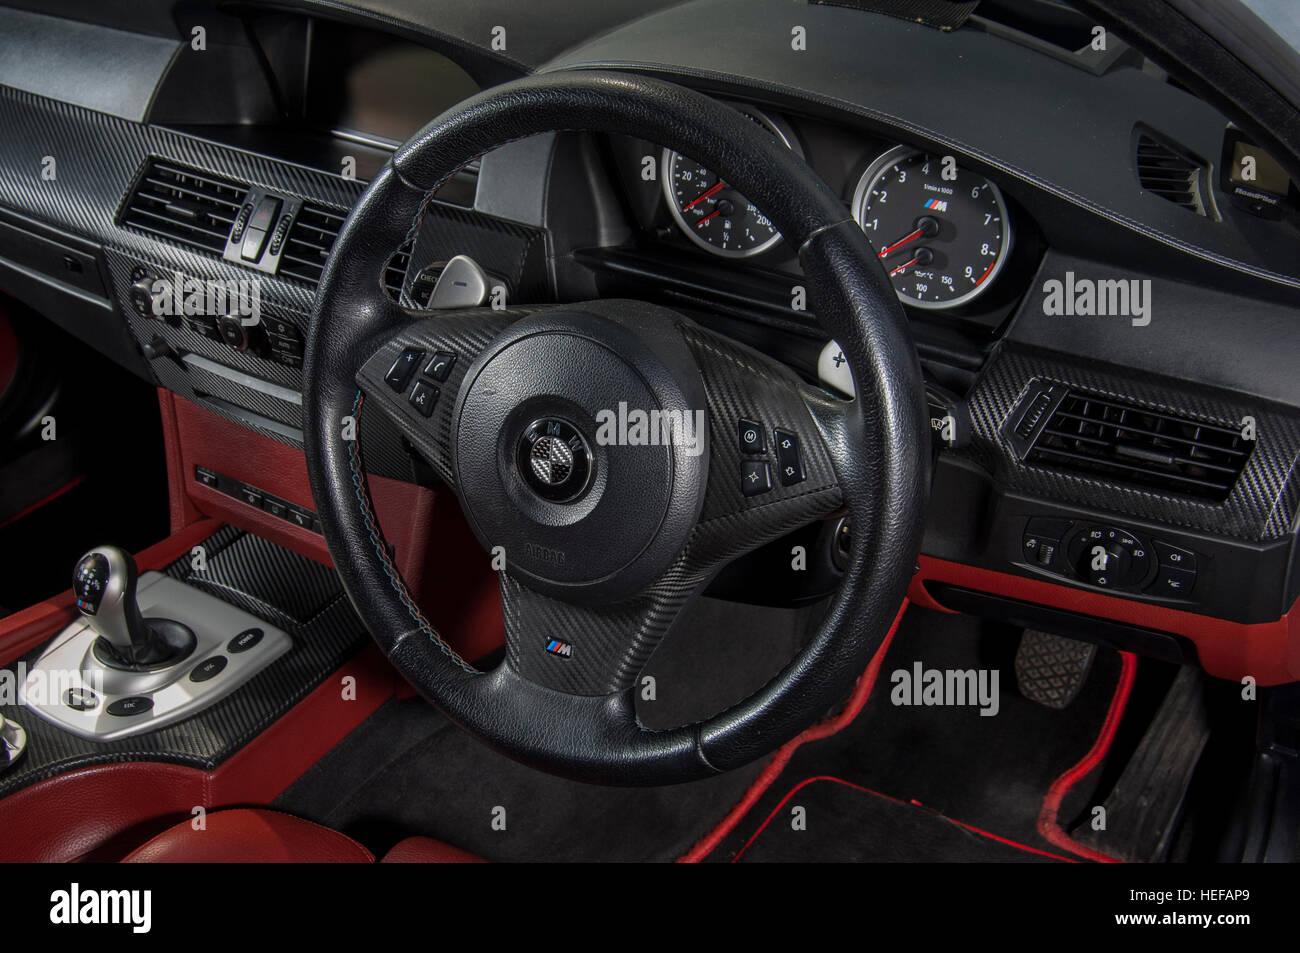 BMW E60 M5 2 Stockfotografie - Alamy